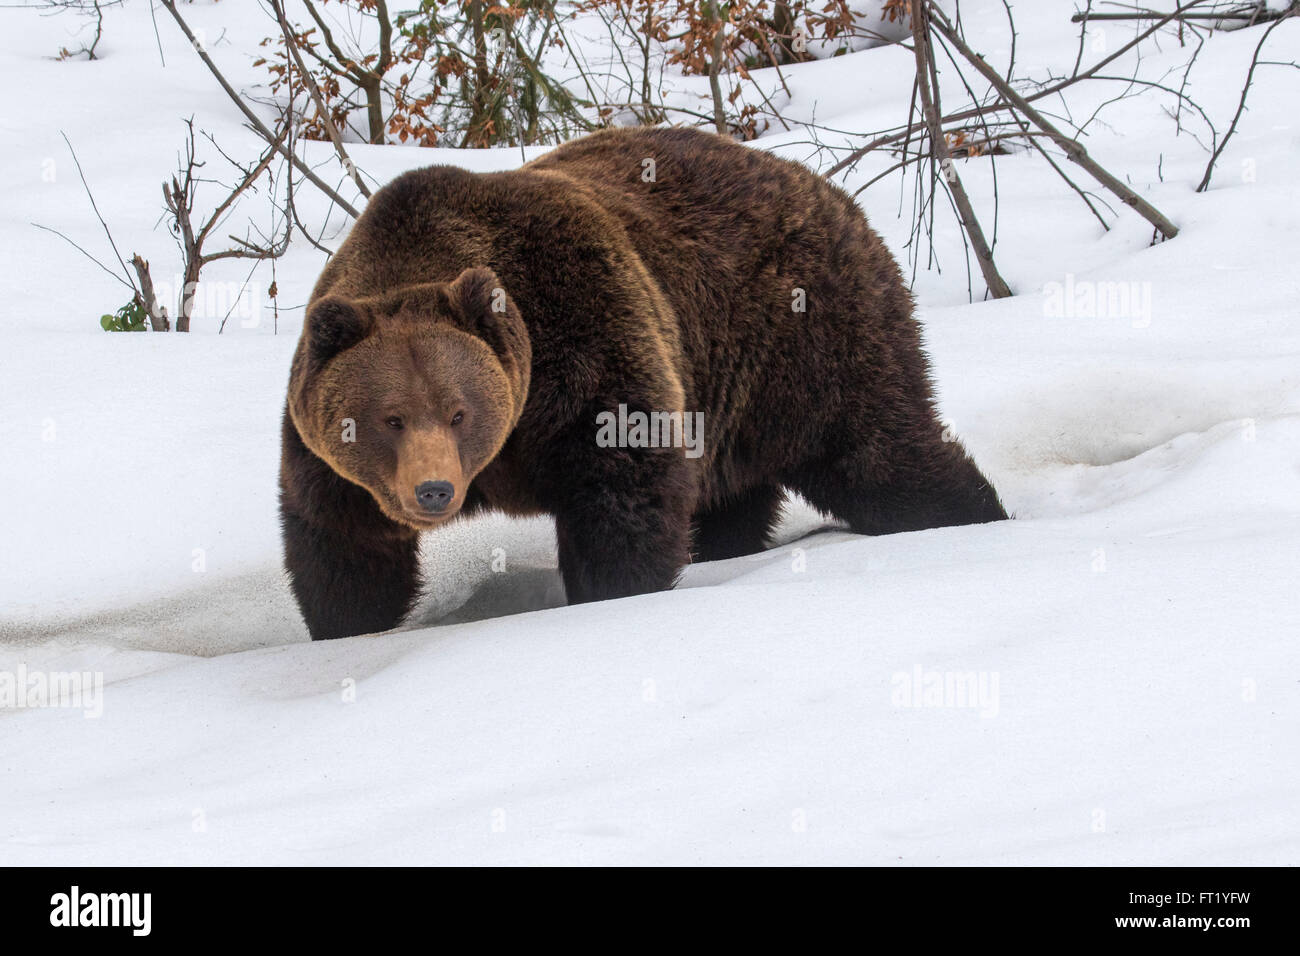 Oso pardo (Ursus arctos) caminar en el bosque de la nieve en invierno / otoño / primavera Foto de stock